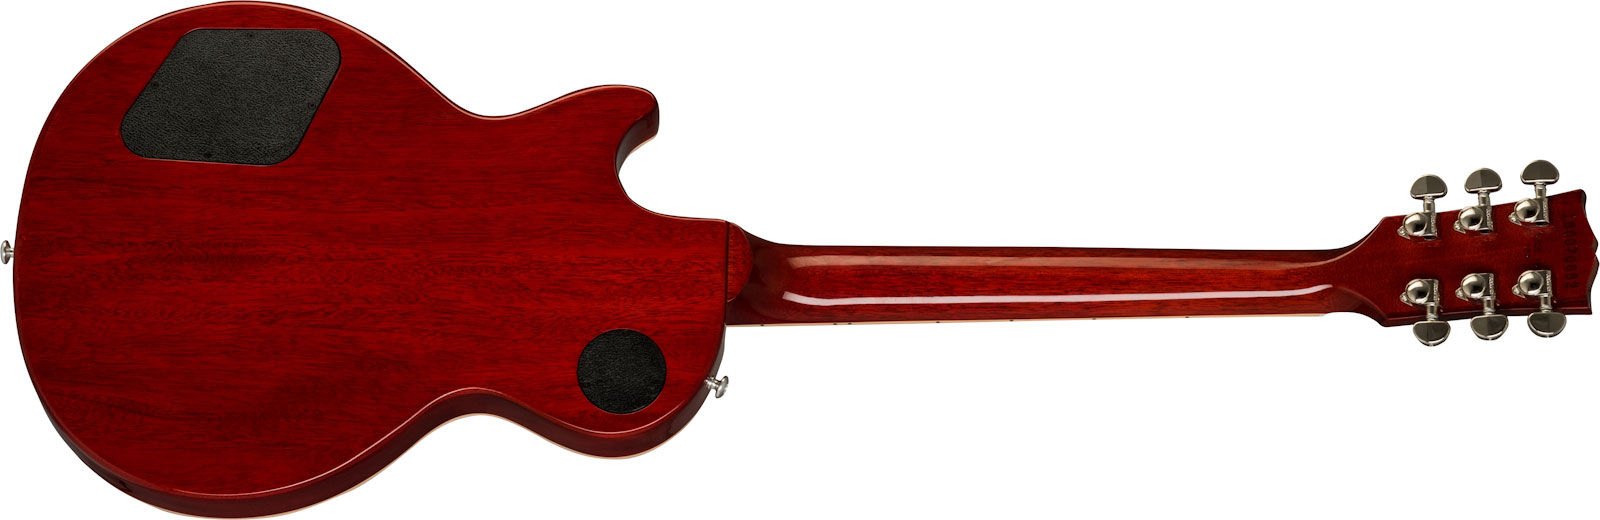 Gibson Les Paul Classic Modern 2019 2h Ht Rw - Heritage Cherry Sunburst - Guitare Électrique Single Cut - Variation 1